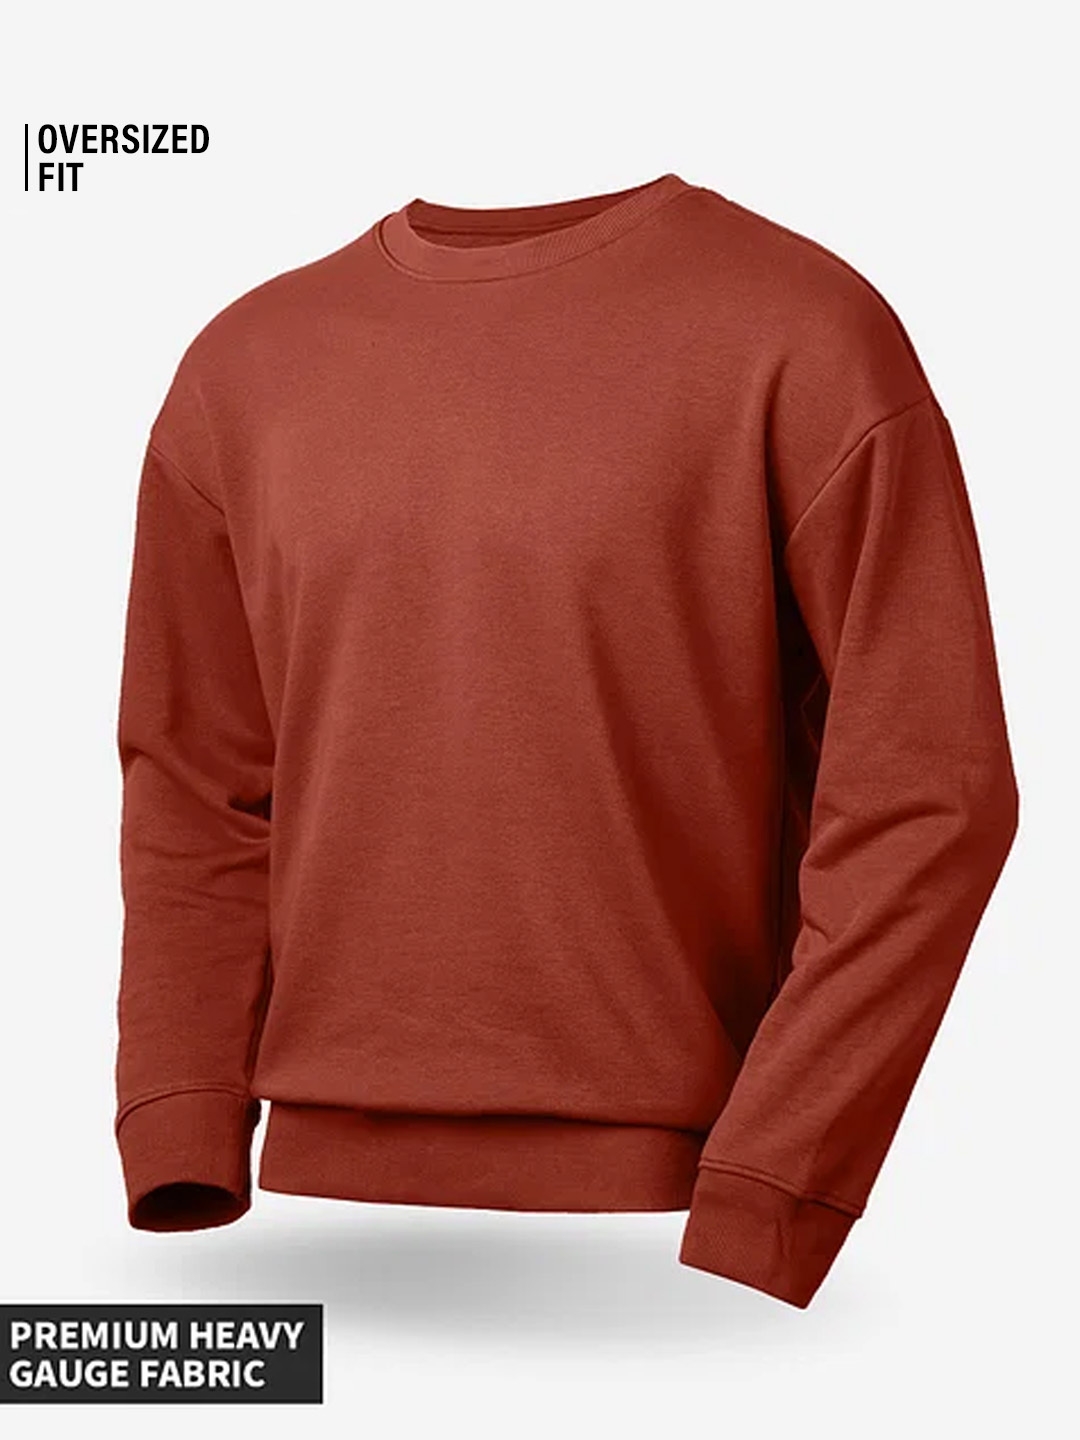 Men's Solids: Red Clay Men's Oversized Sweatshirts